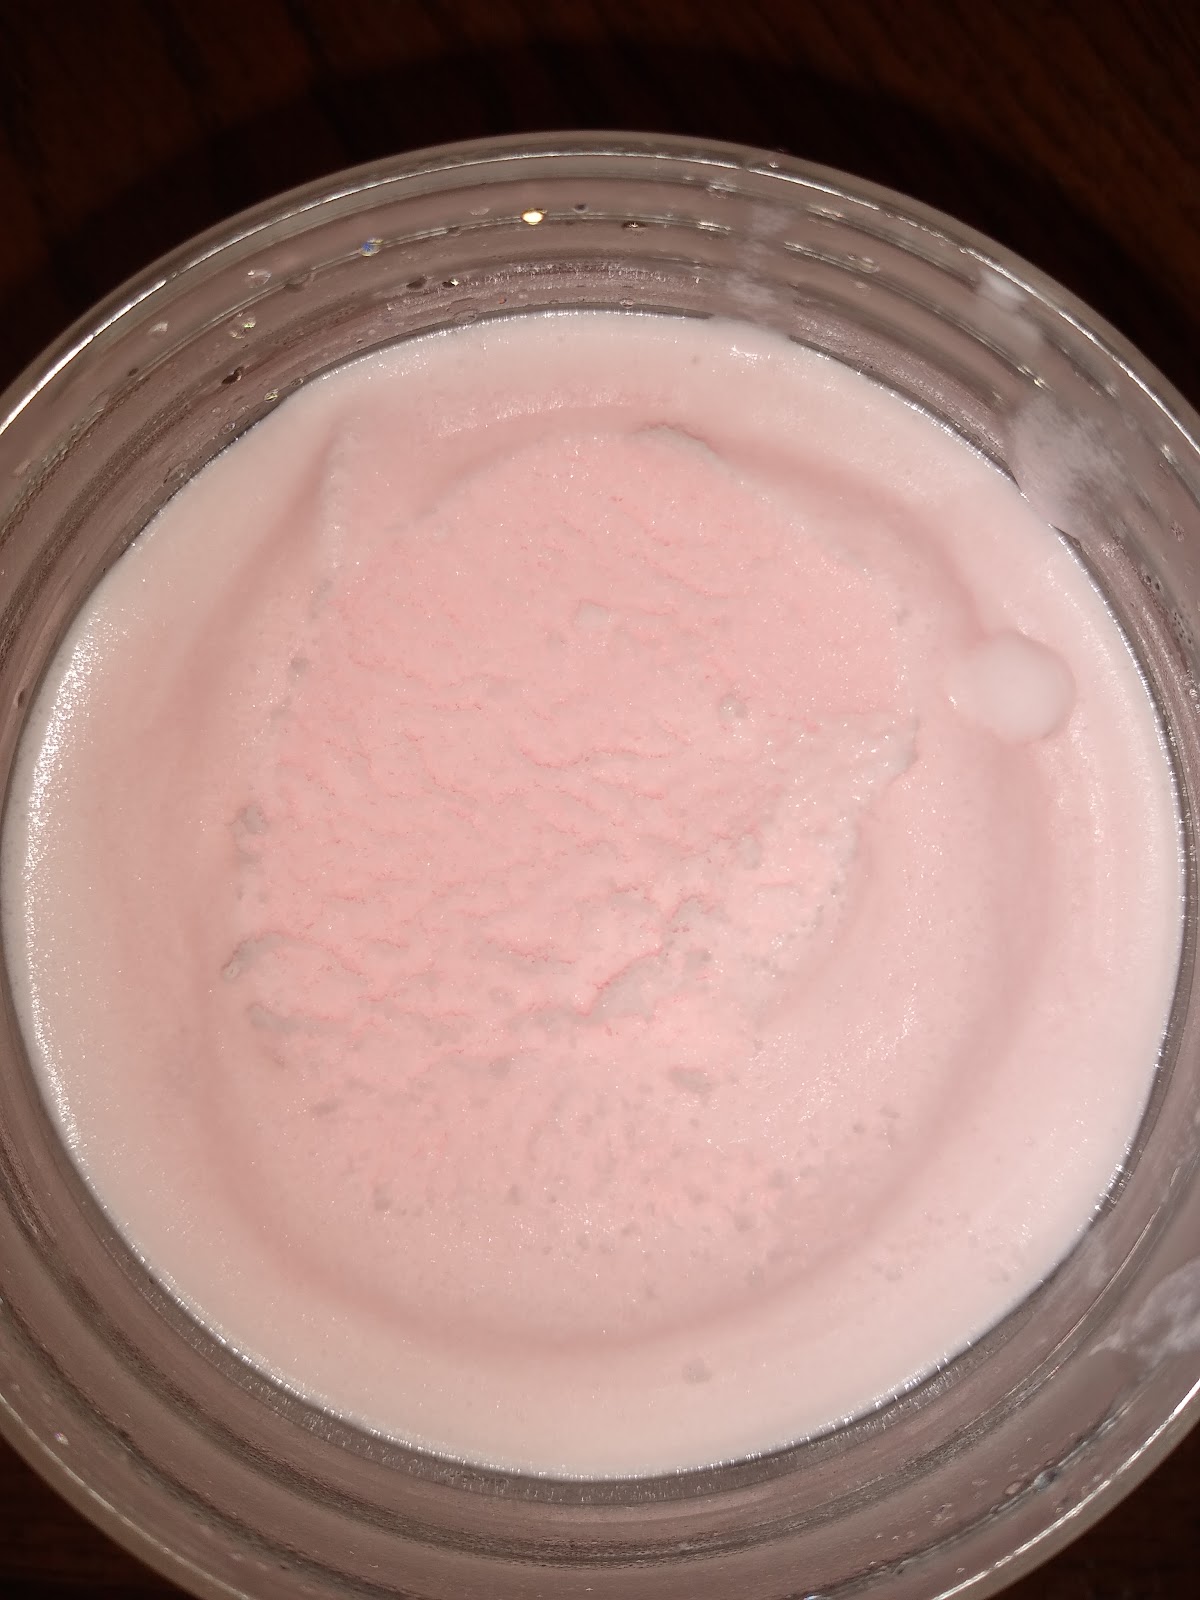 strawberry ice cream recipe picture